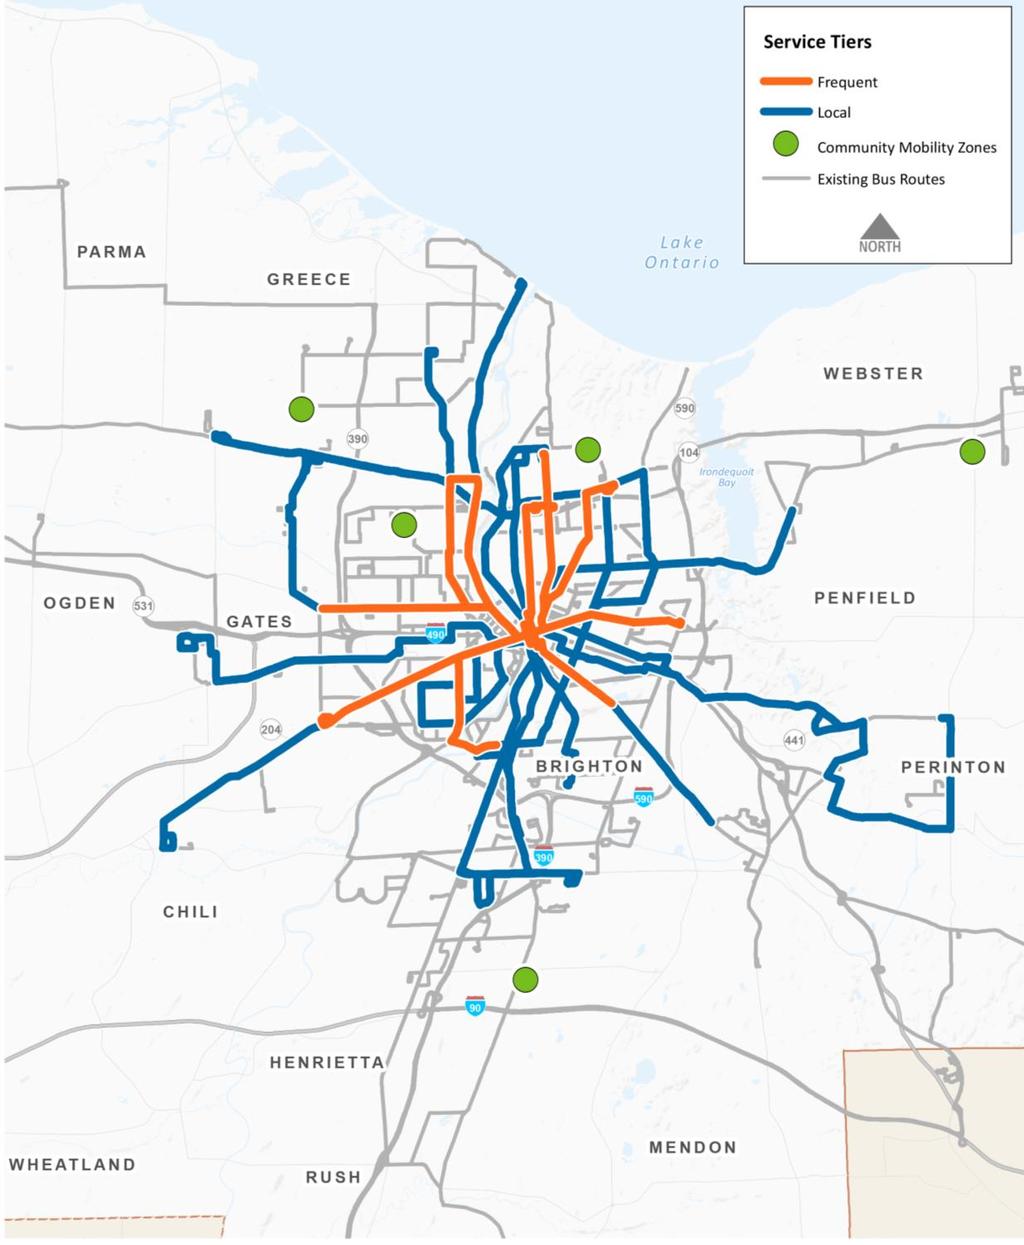 Red propuesta Niveles de servicio Frecuente Local Zonas de movilidad comunitaria Rutas de autobuses existentes NORTE o Diez rutas frecuentes o